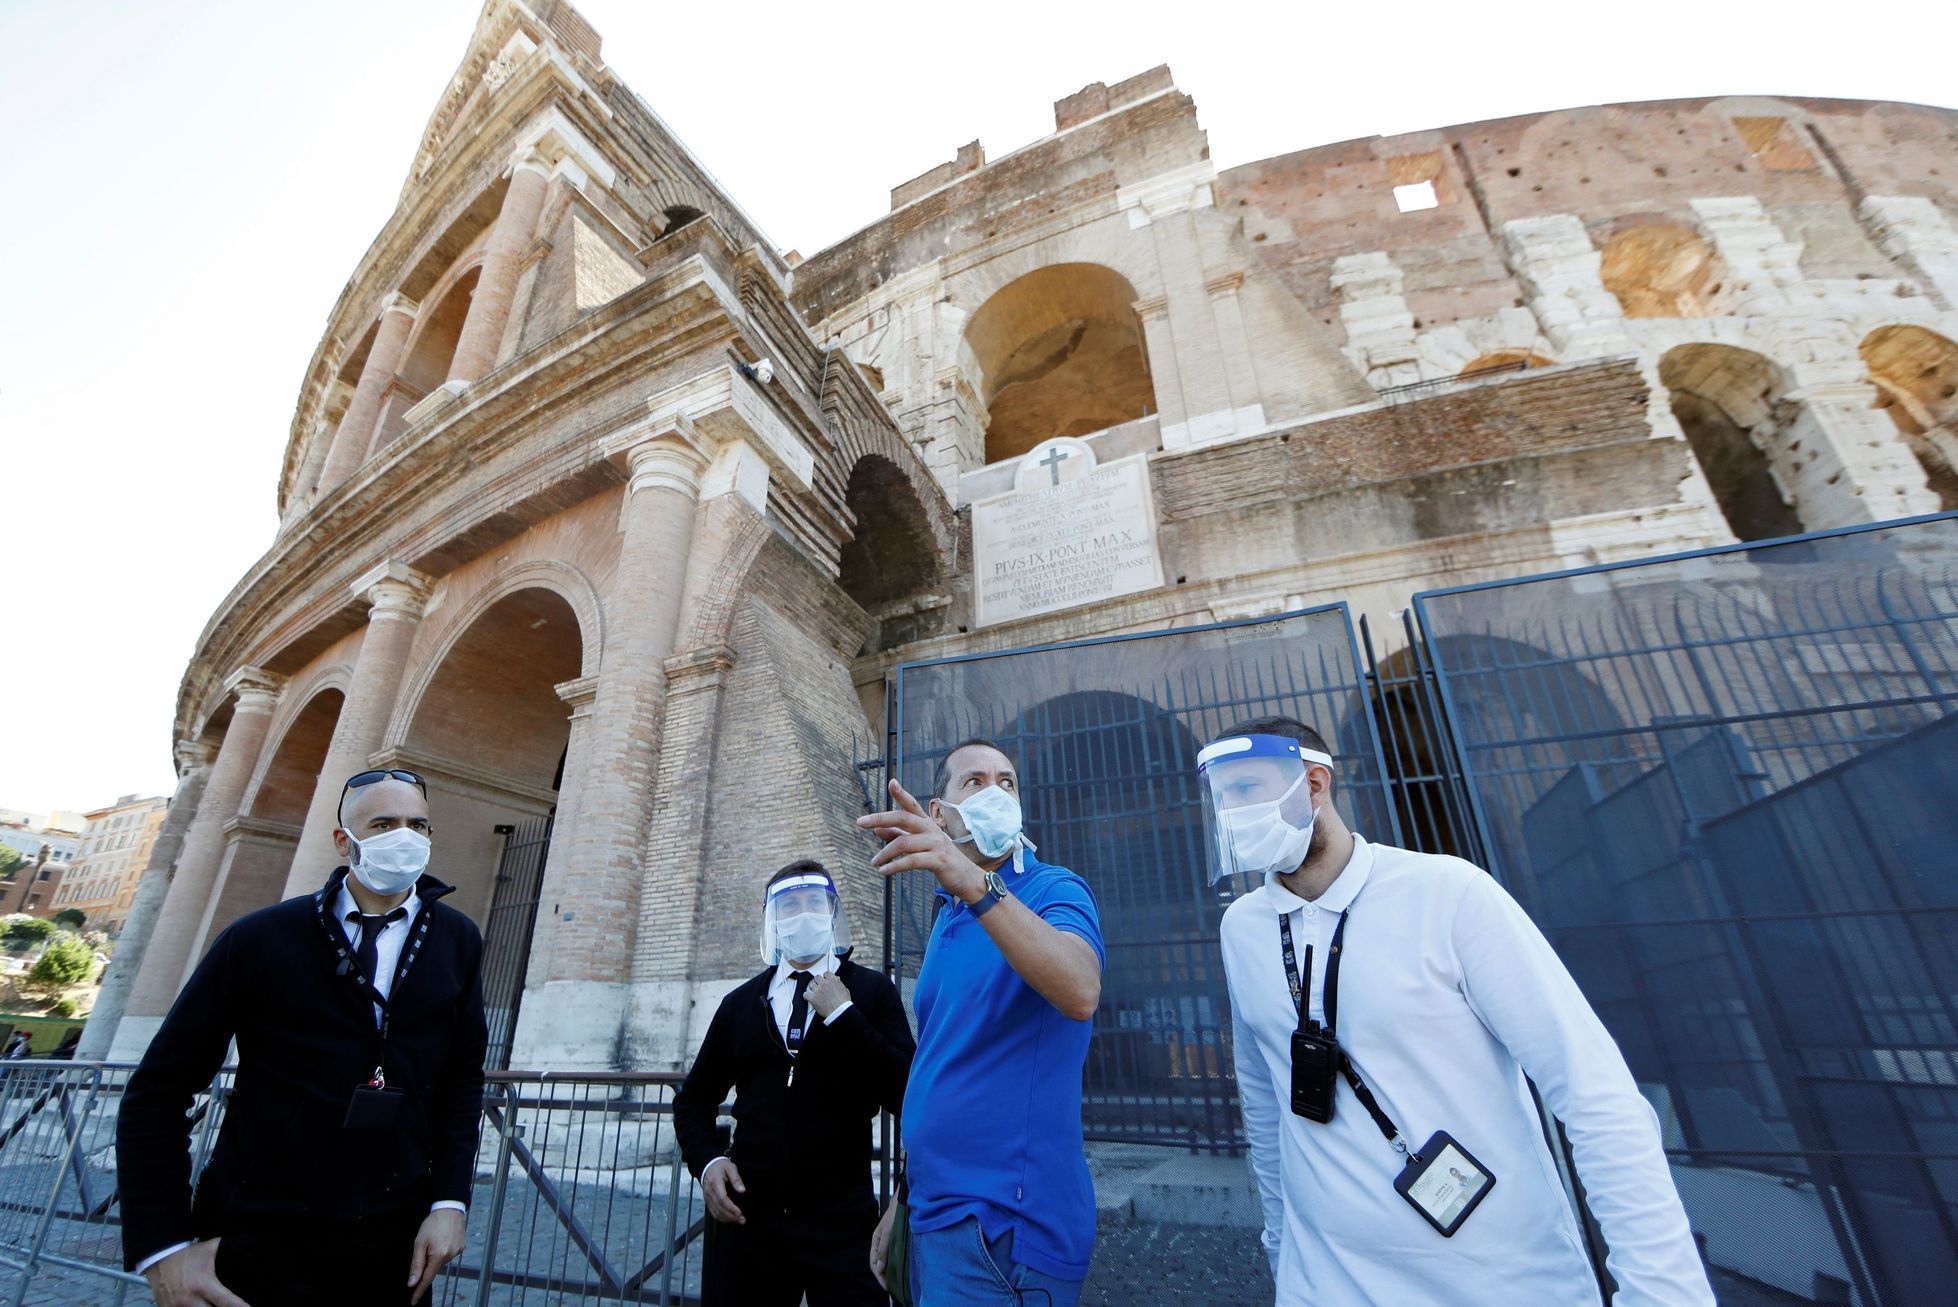 Koloseum se otevírá po přestávce kvůli koronaviru.